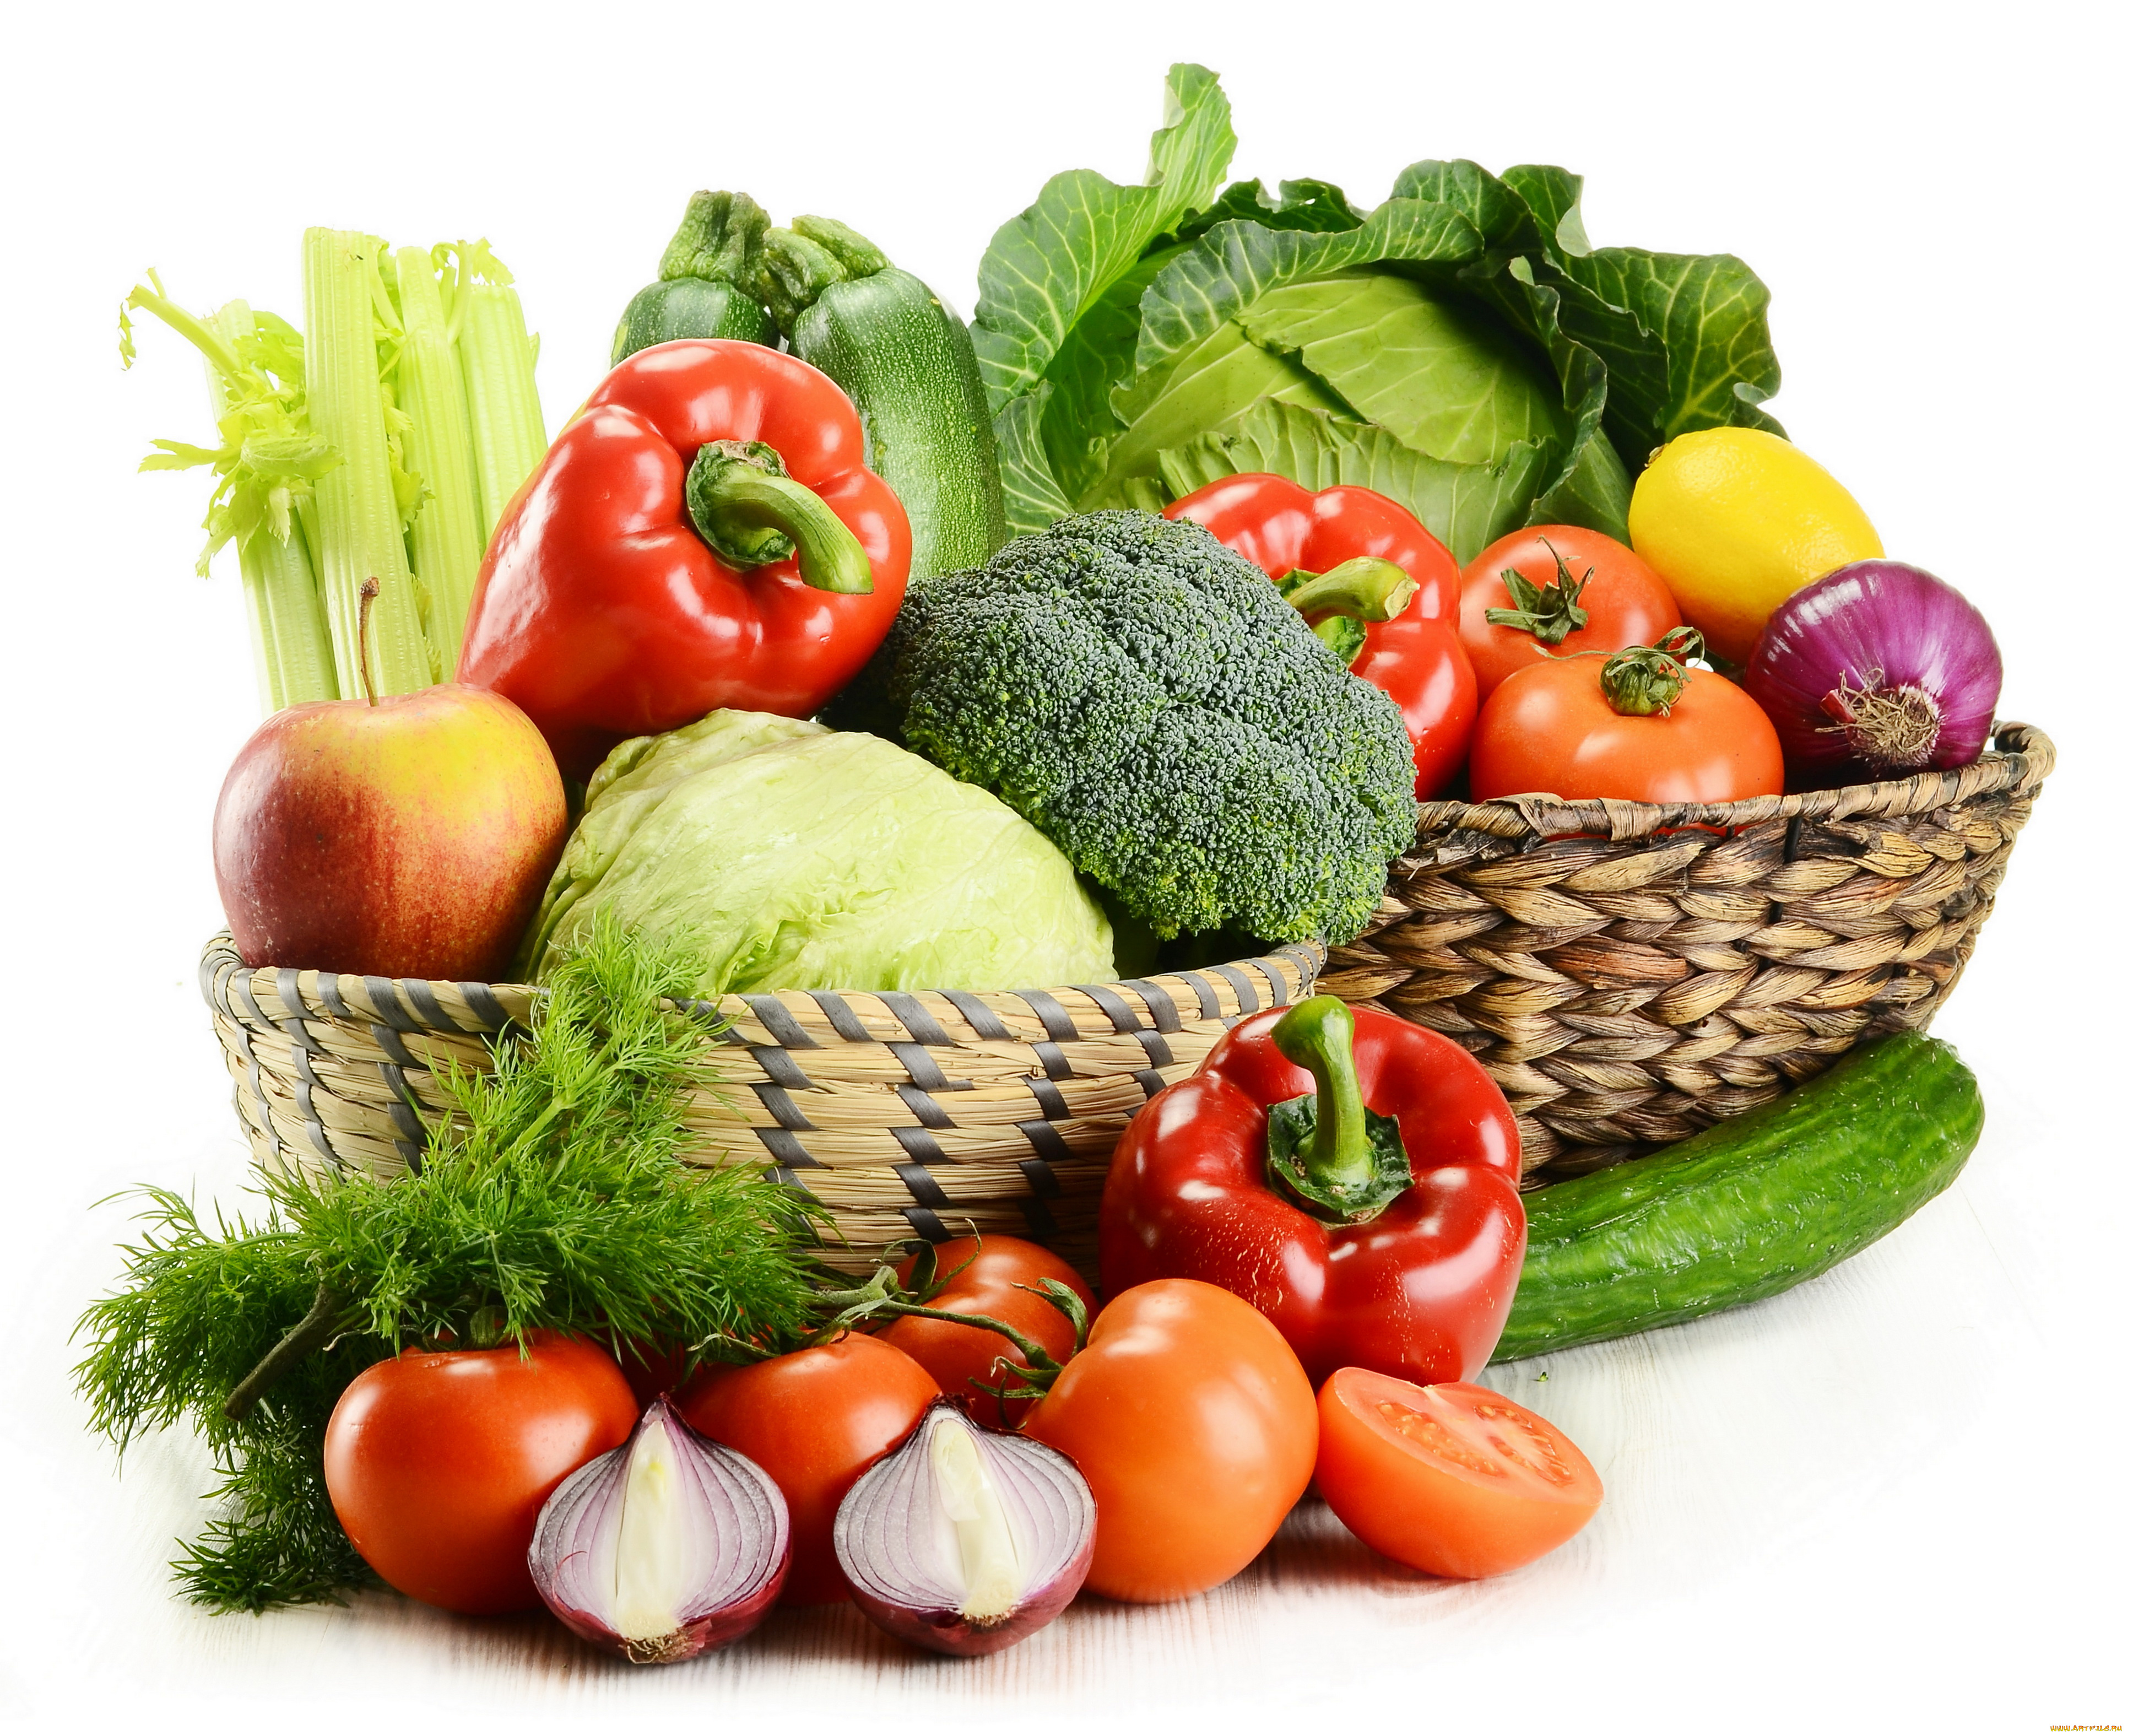 еда, фрукты, овощи, вместе, корзина, помидоры, цветая, капуста, белокачанная, капуста, капуста, огурцы, зелень, перец, томаты